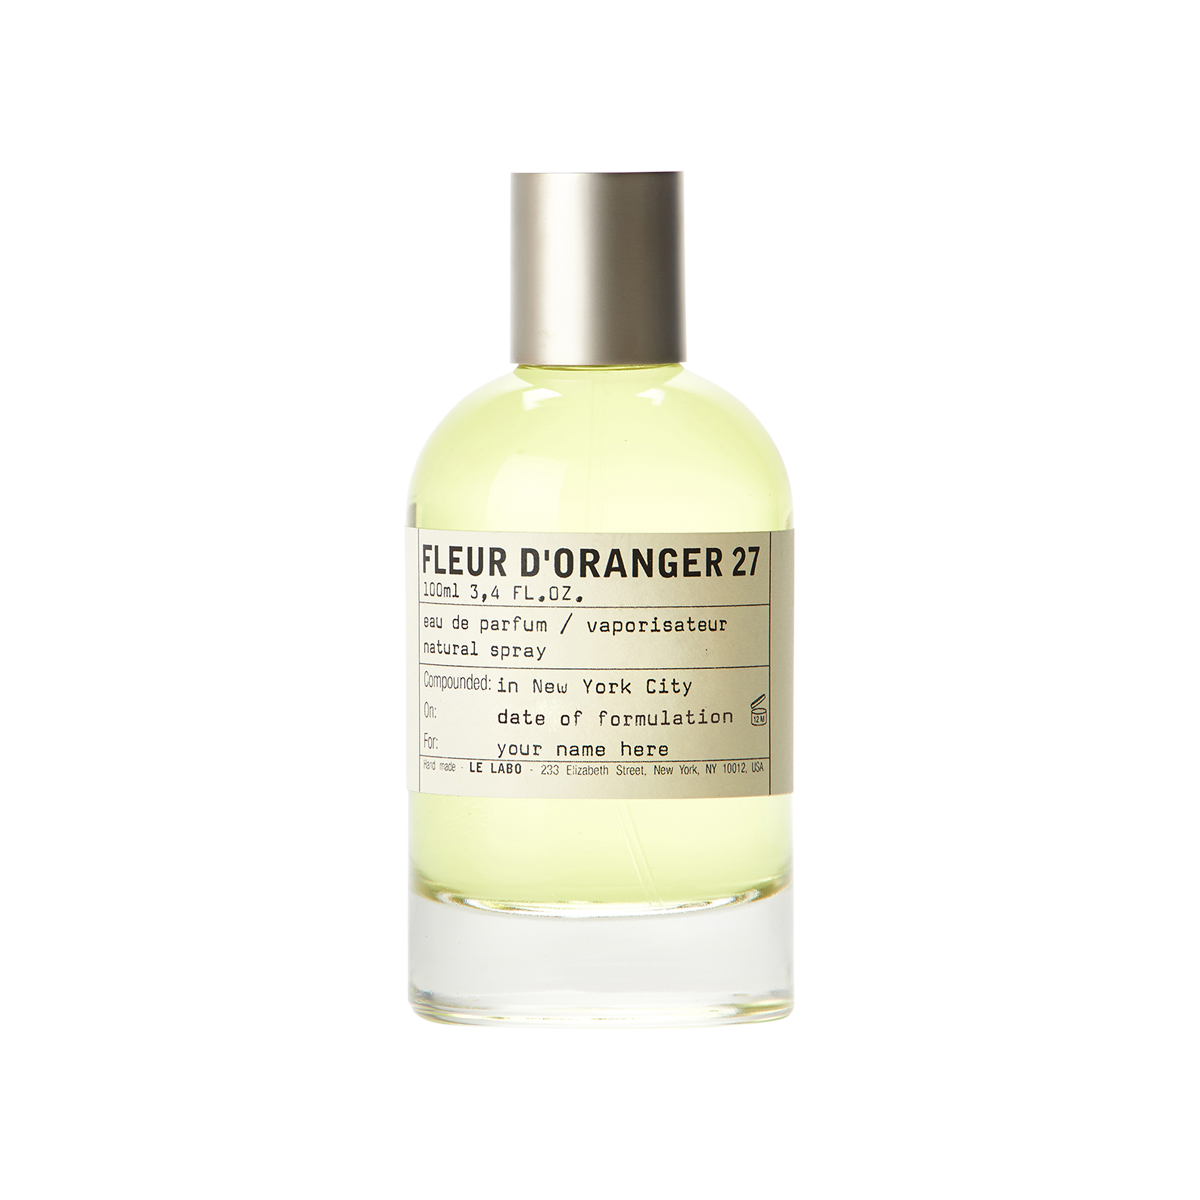 Le Labo fragrances - Fleur d'Oranger 27 Eau de Parfum